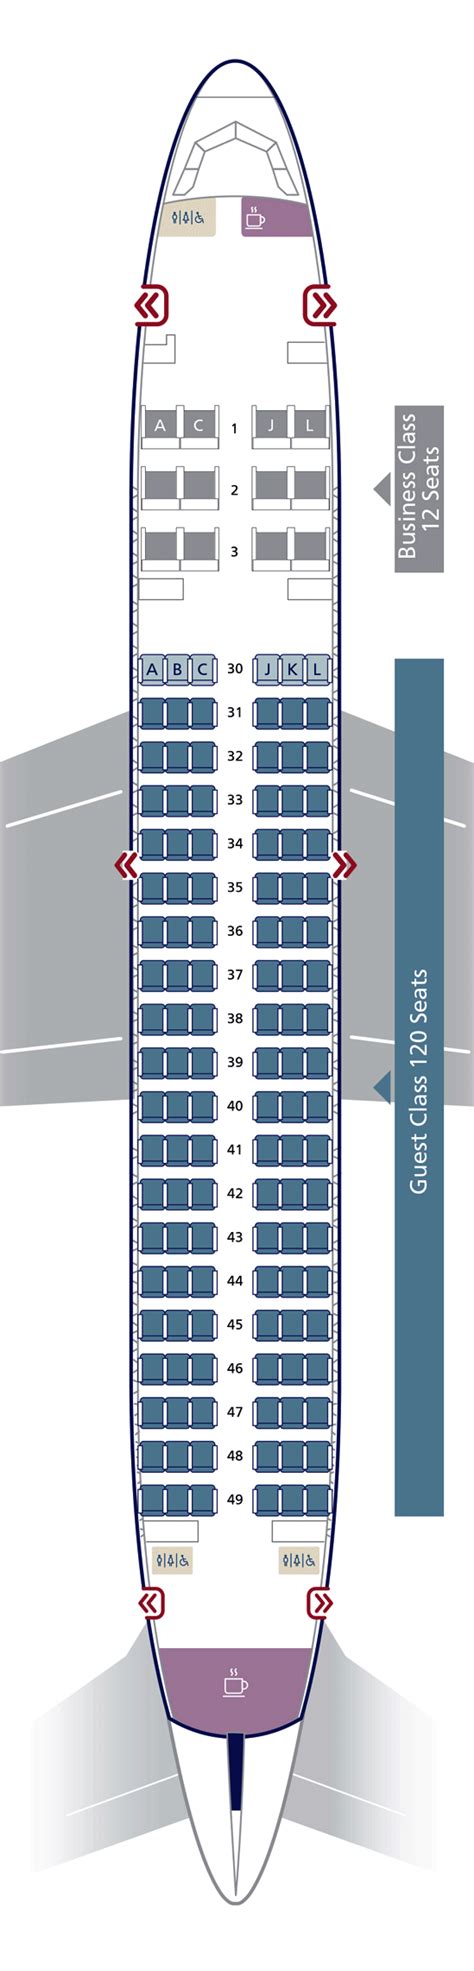 Saudi Arabian Airlines Airbus A320 2 Seat Map